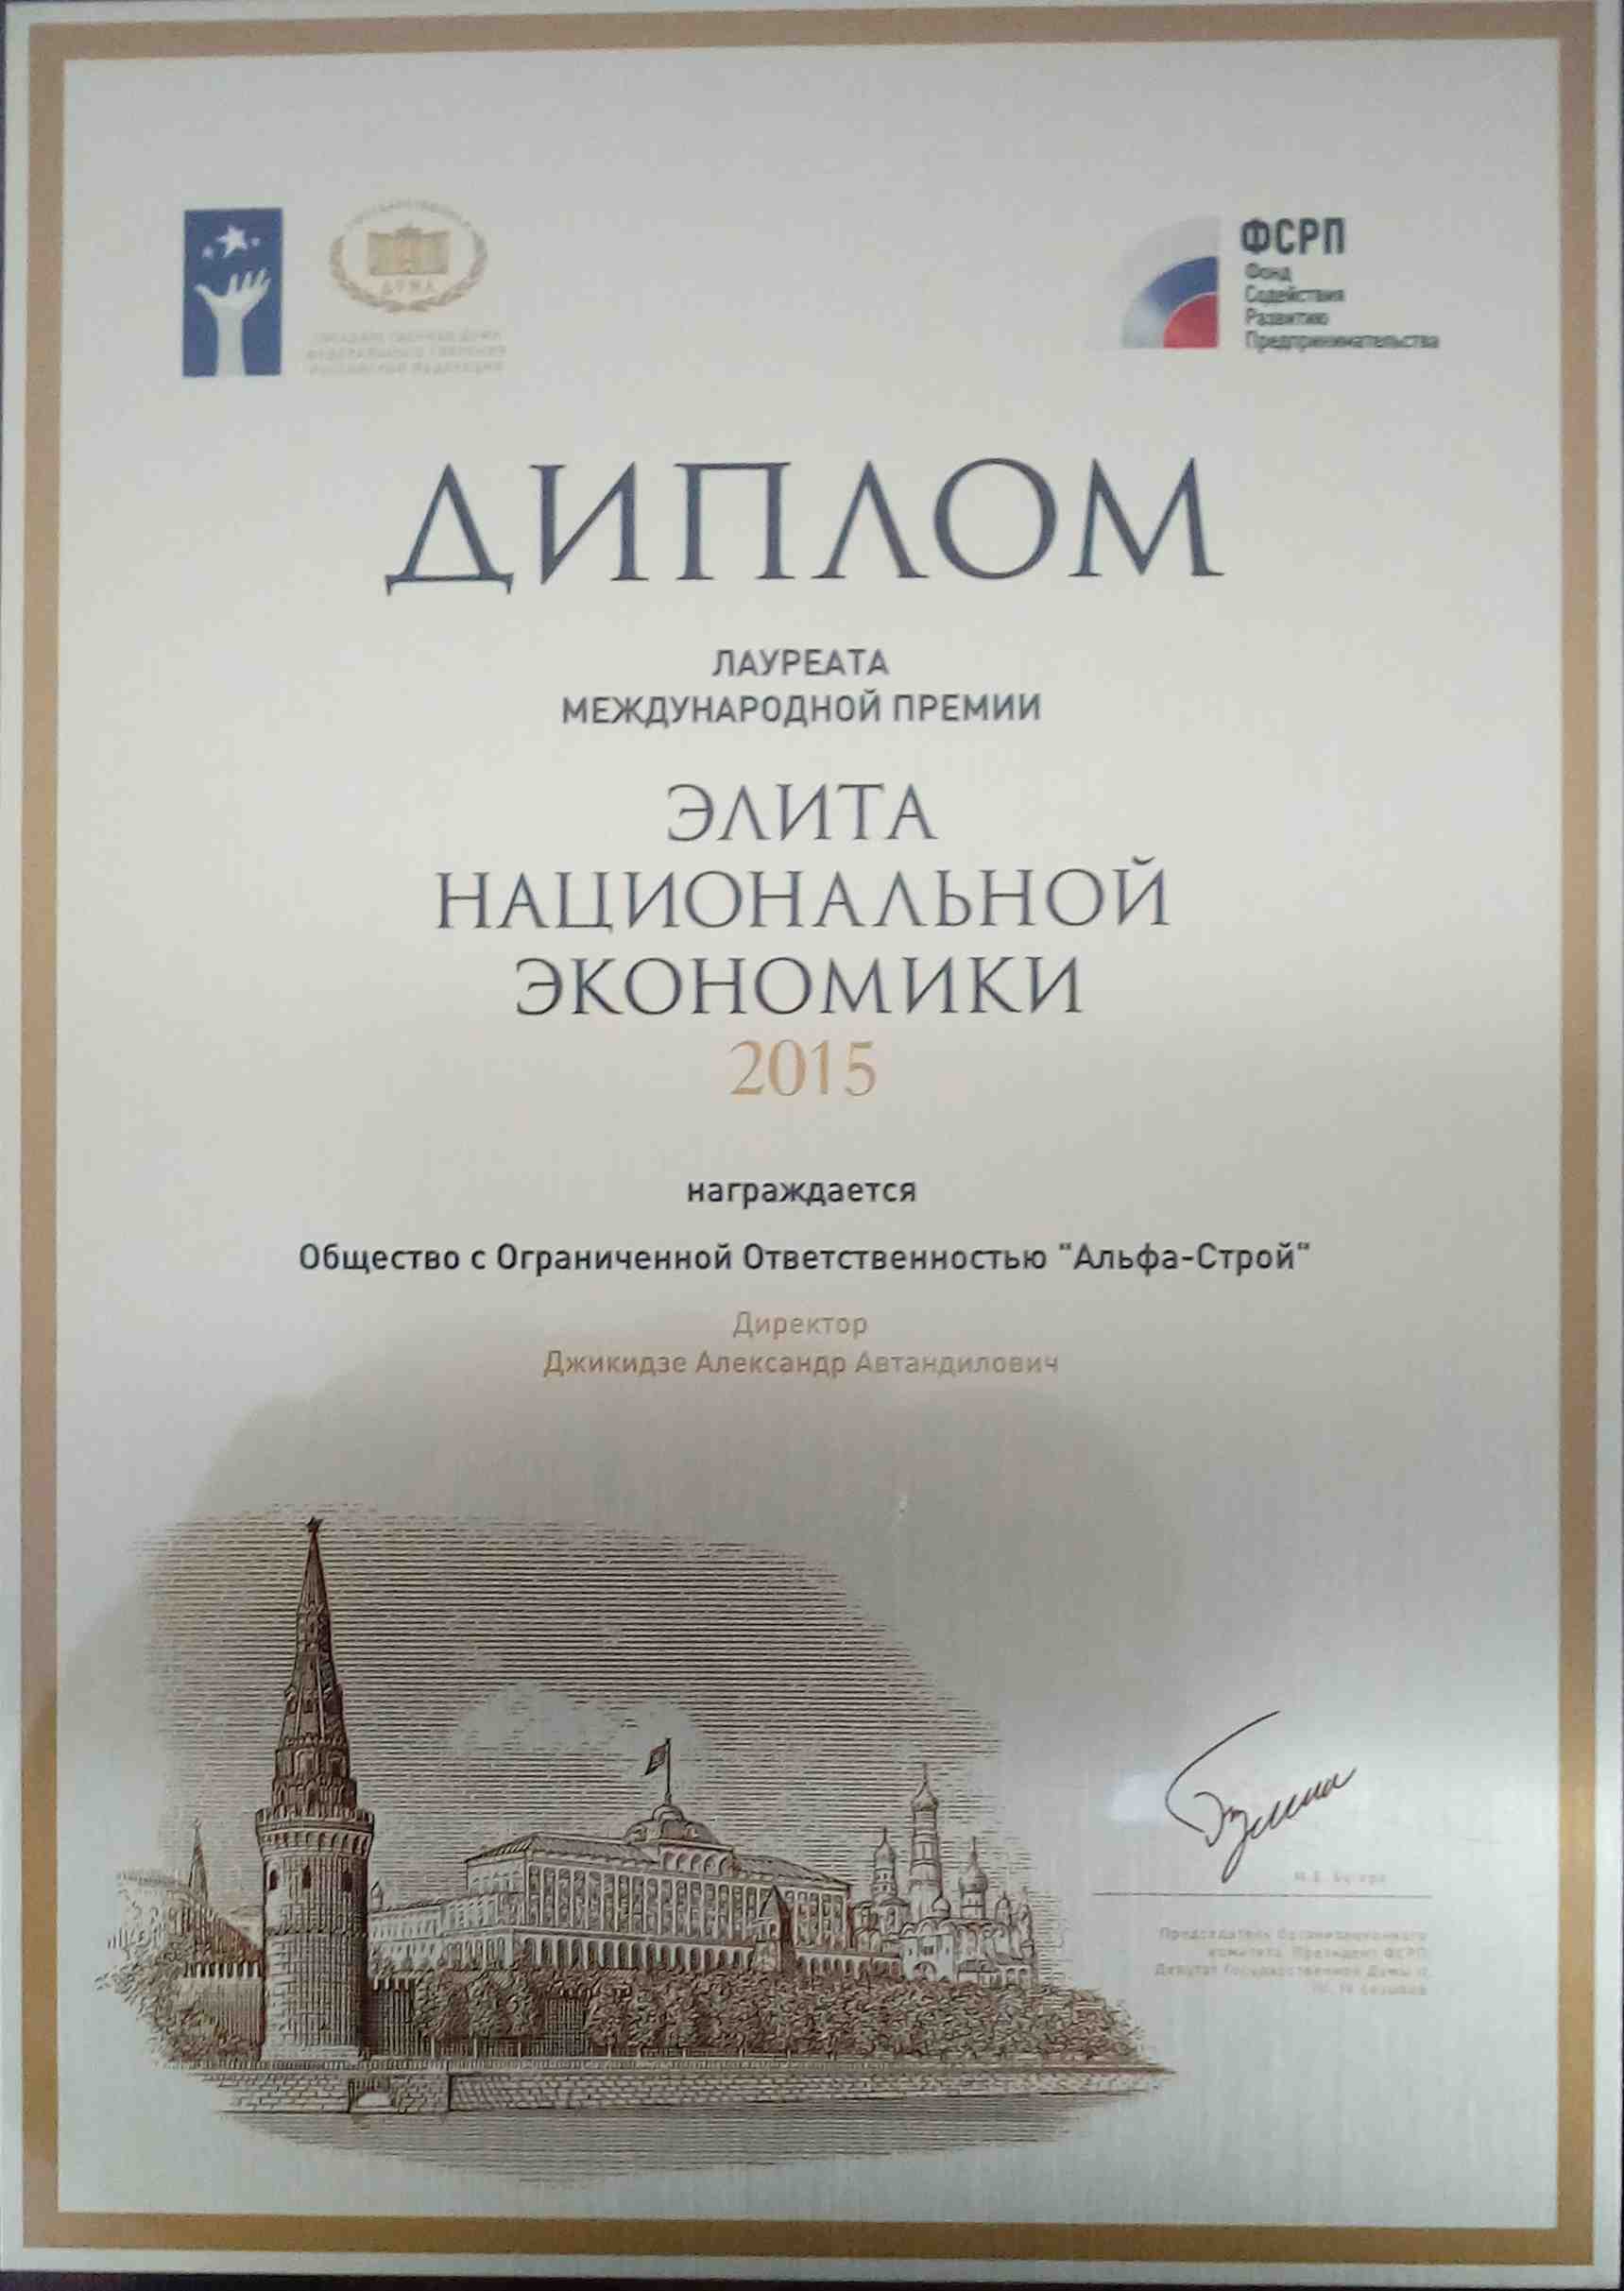 Диплом ООО "Альфа-Строй" - Элита национальной экономики - 2015